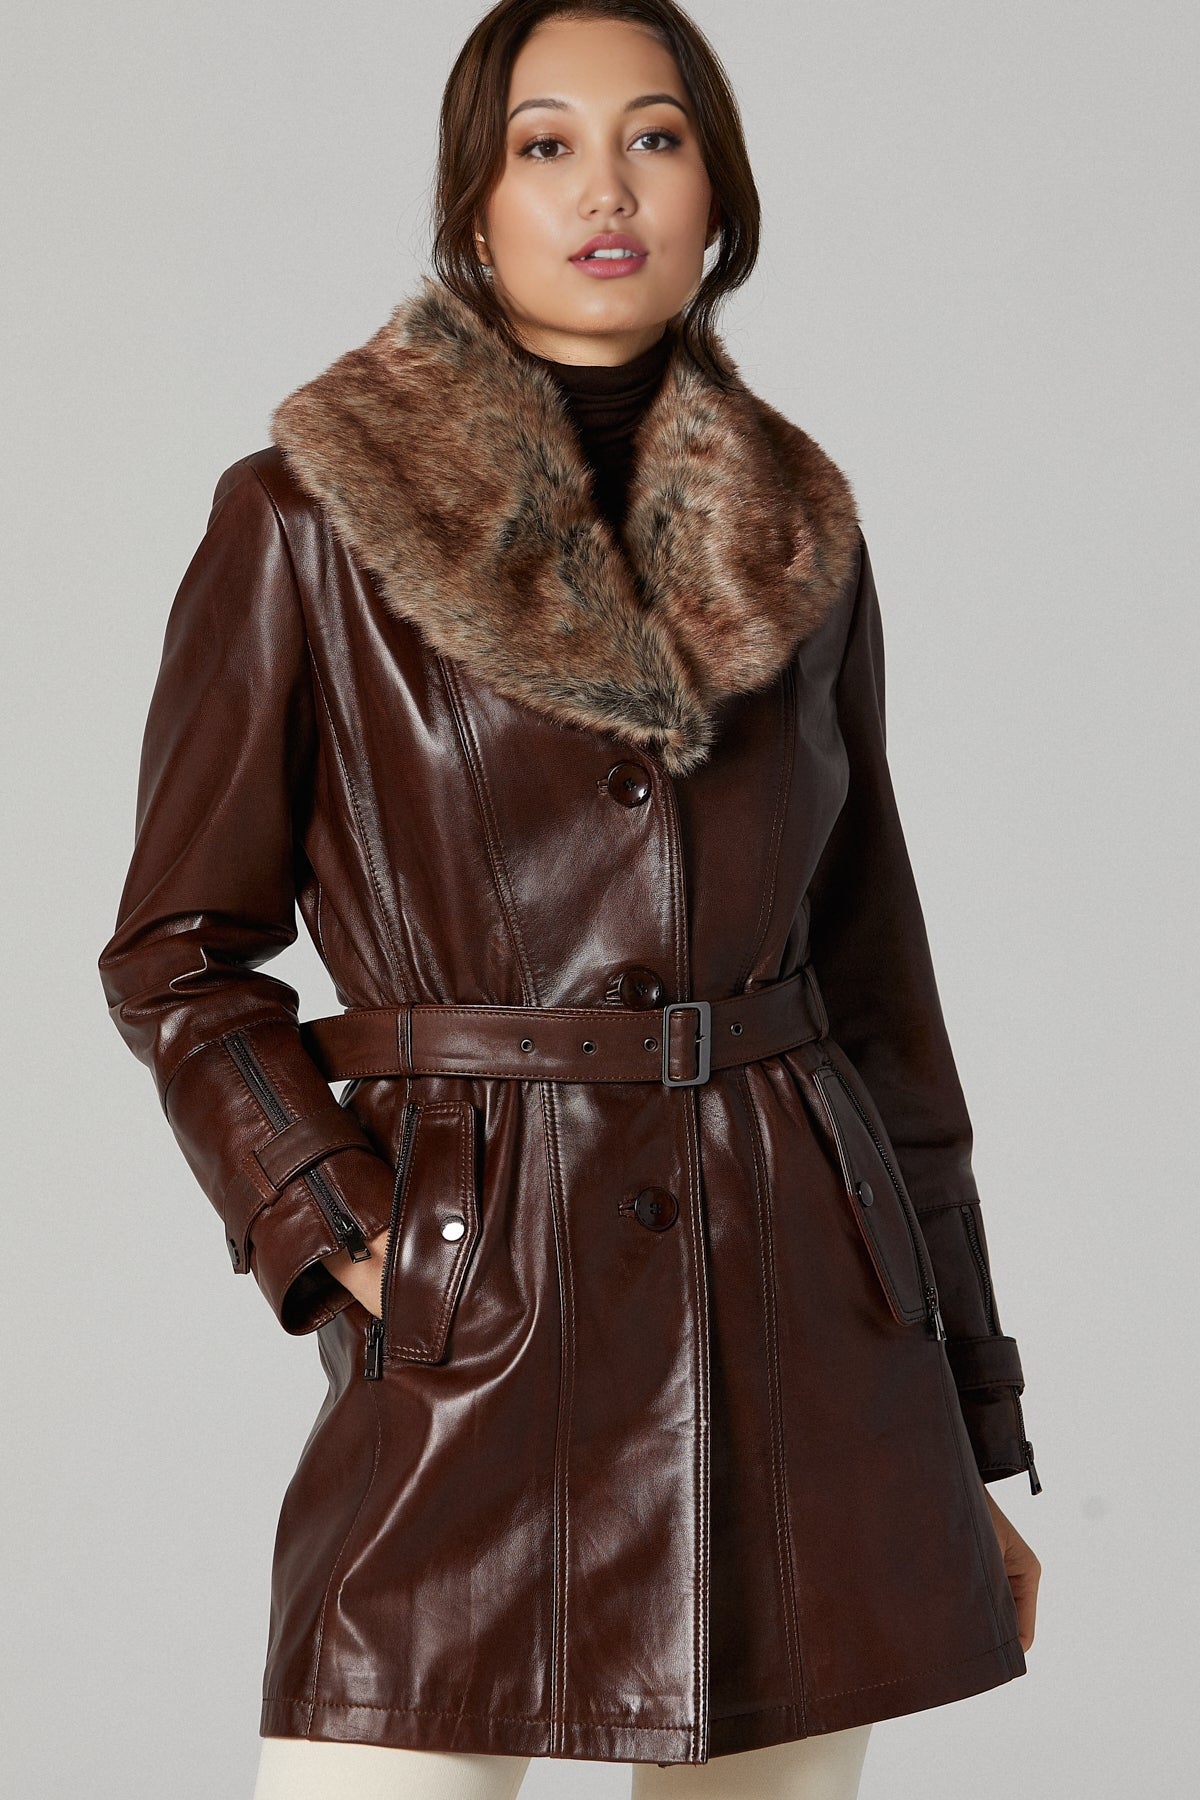 Rhoda Women's Brown Fur Long Leather Jacket